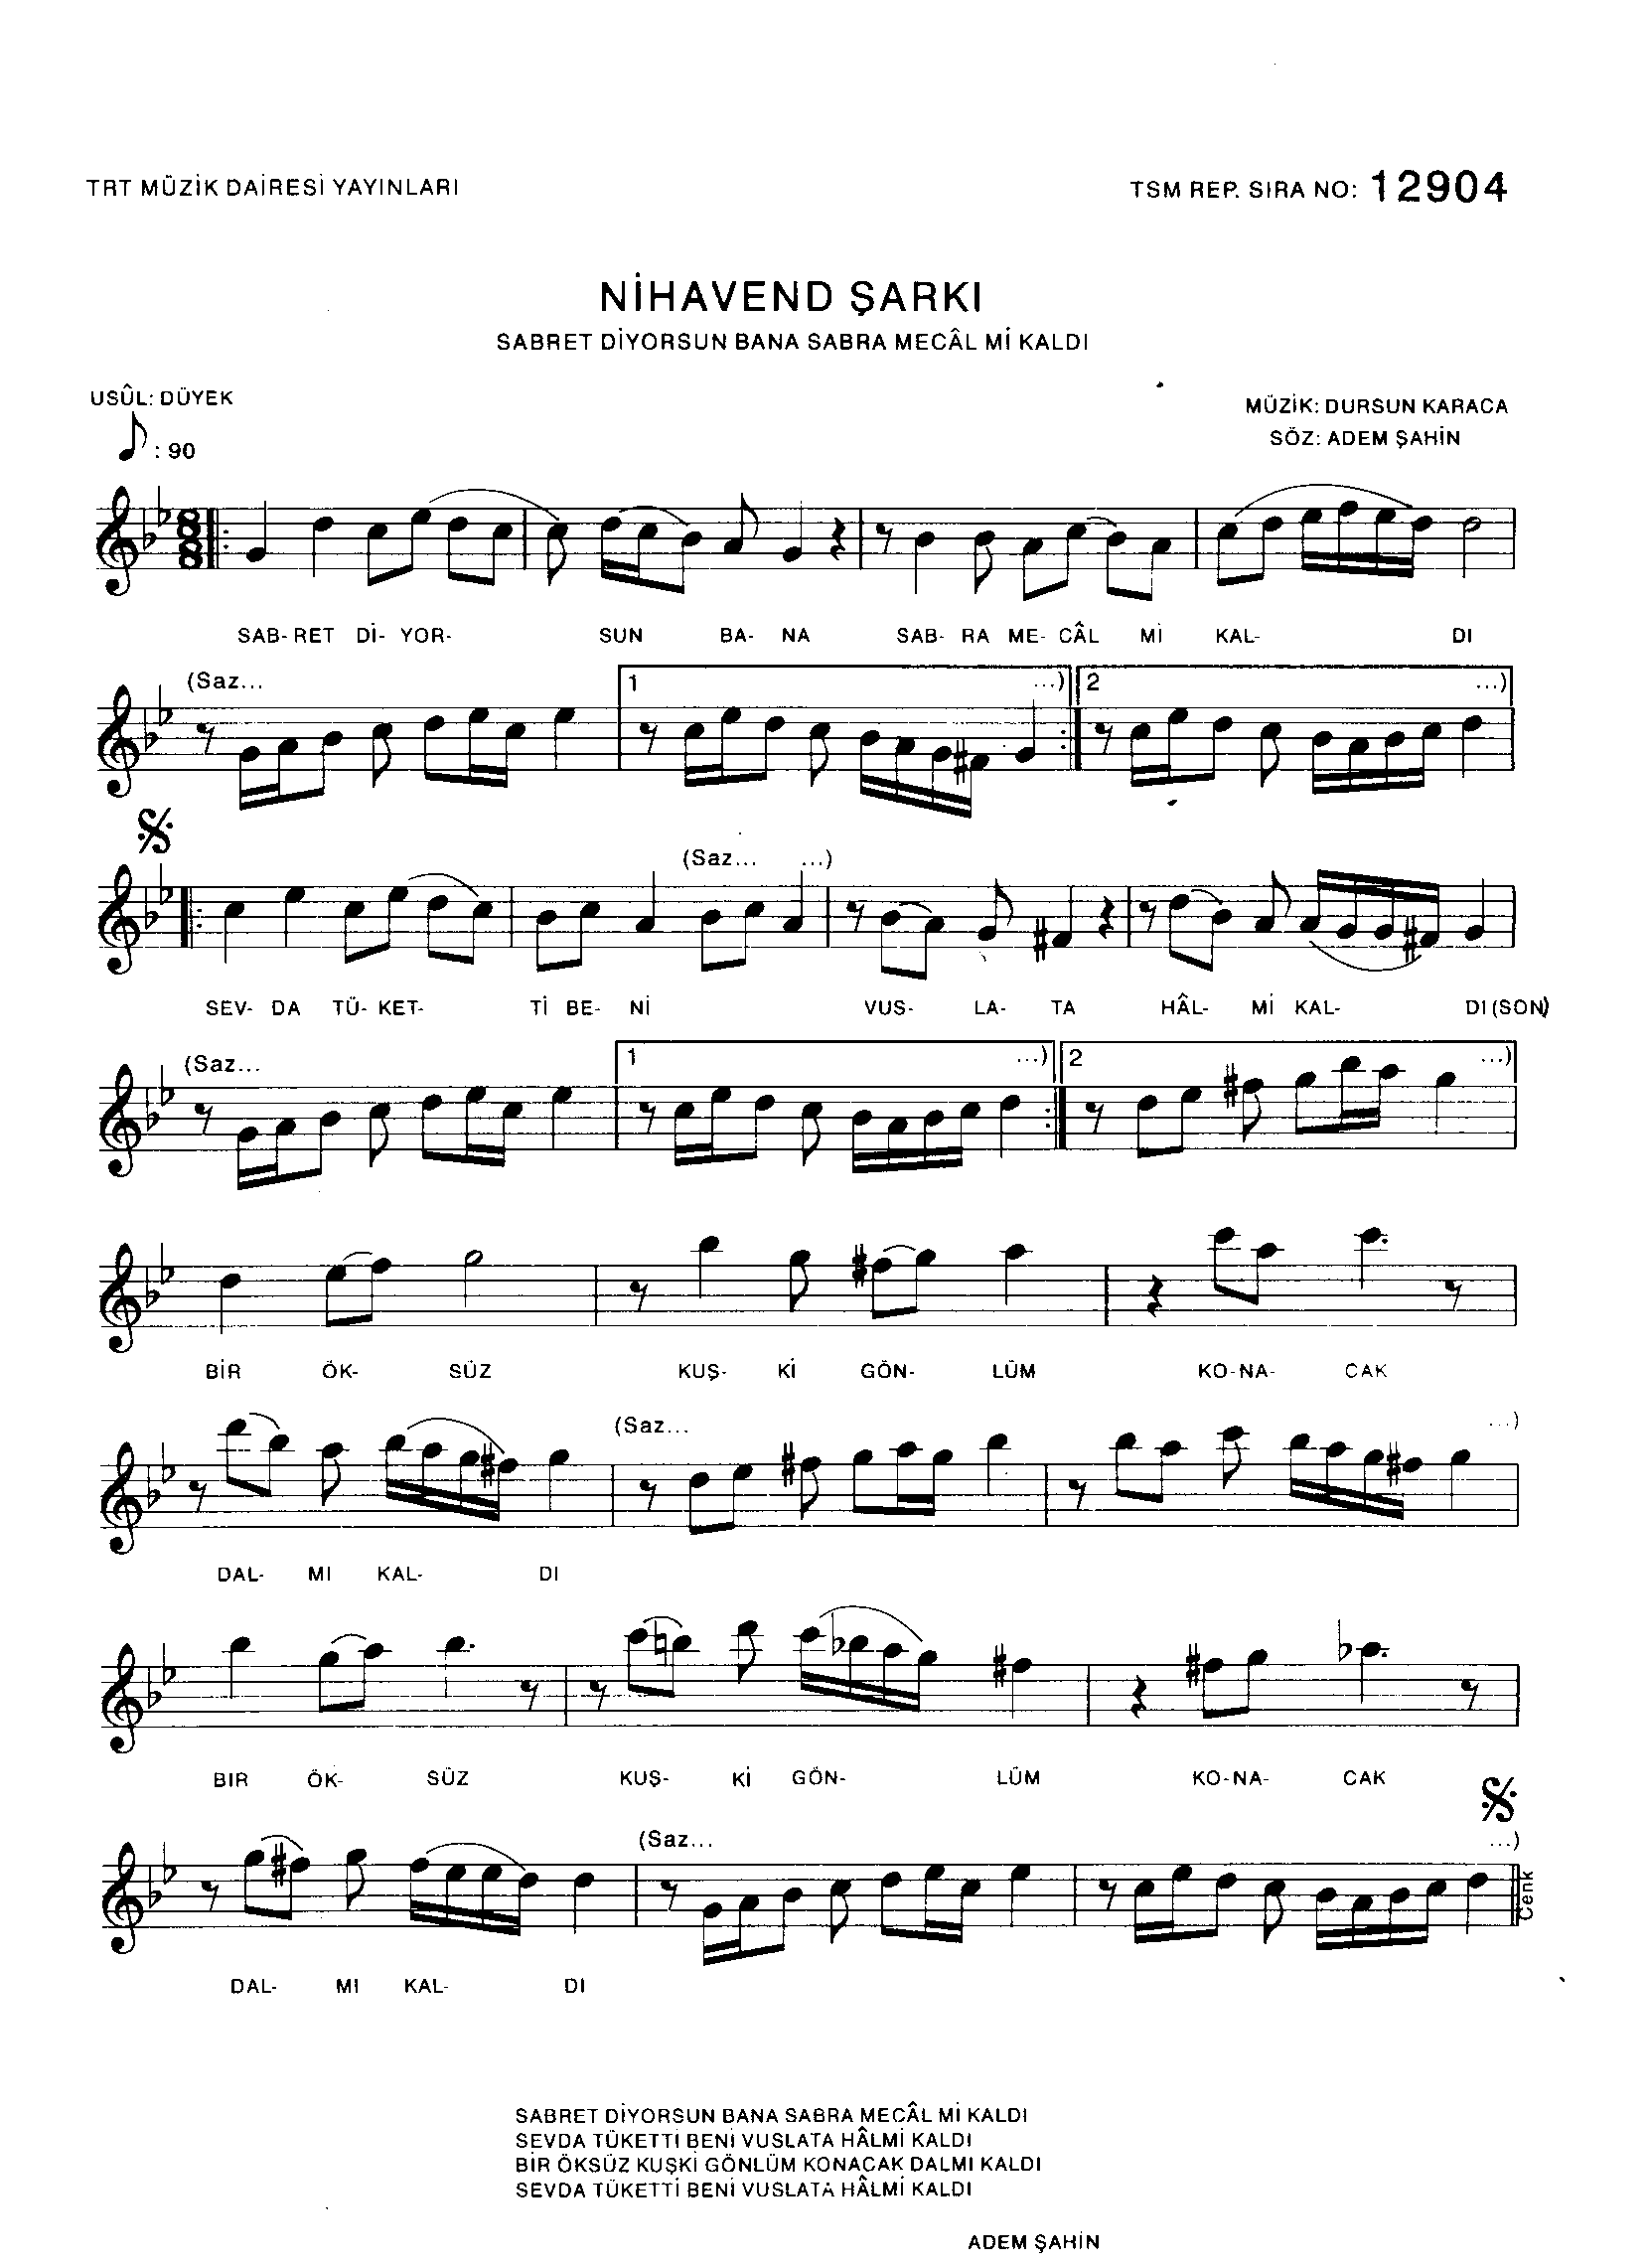 Nihâvend - Şarkı - Dursun Karaca - Sayfa 1